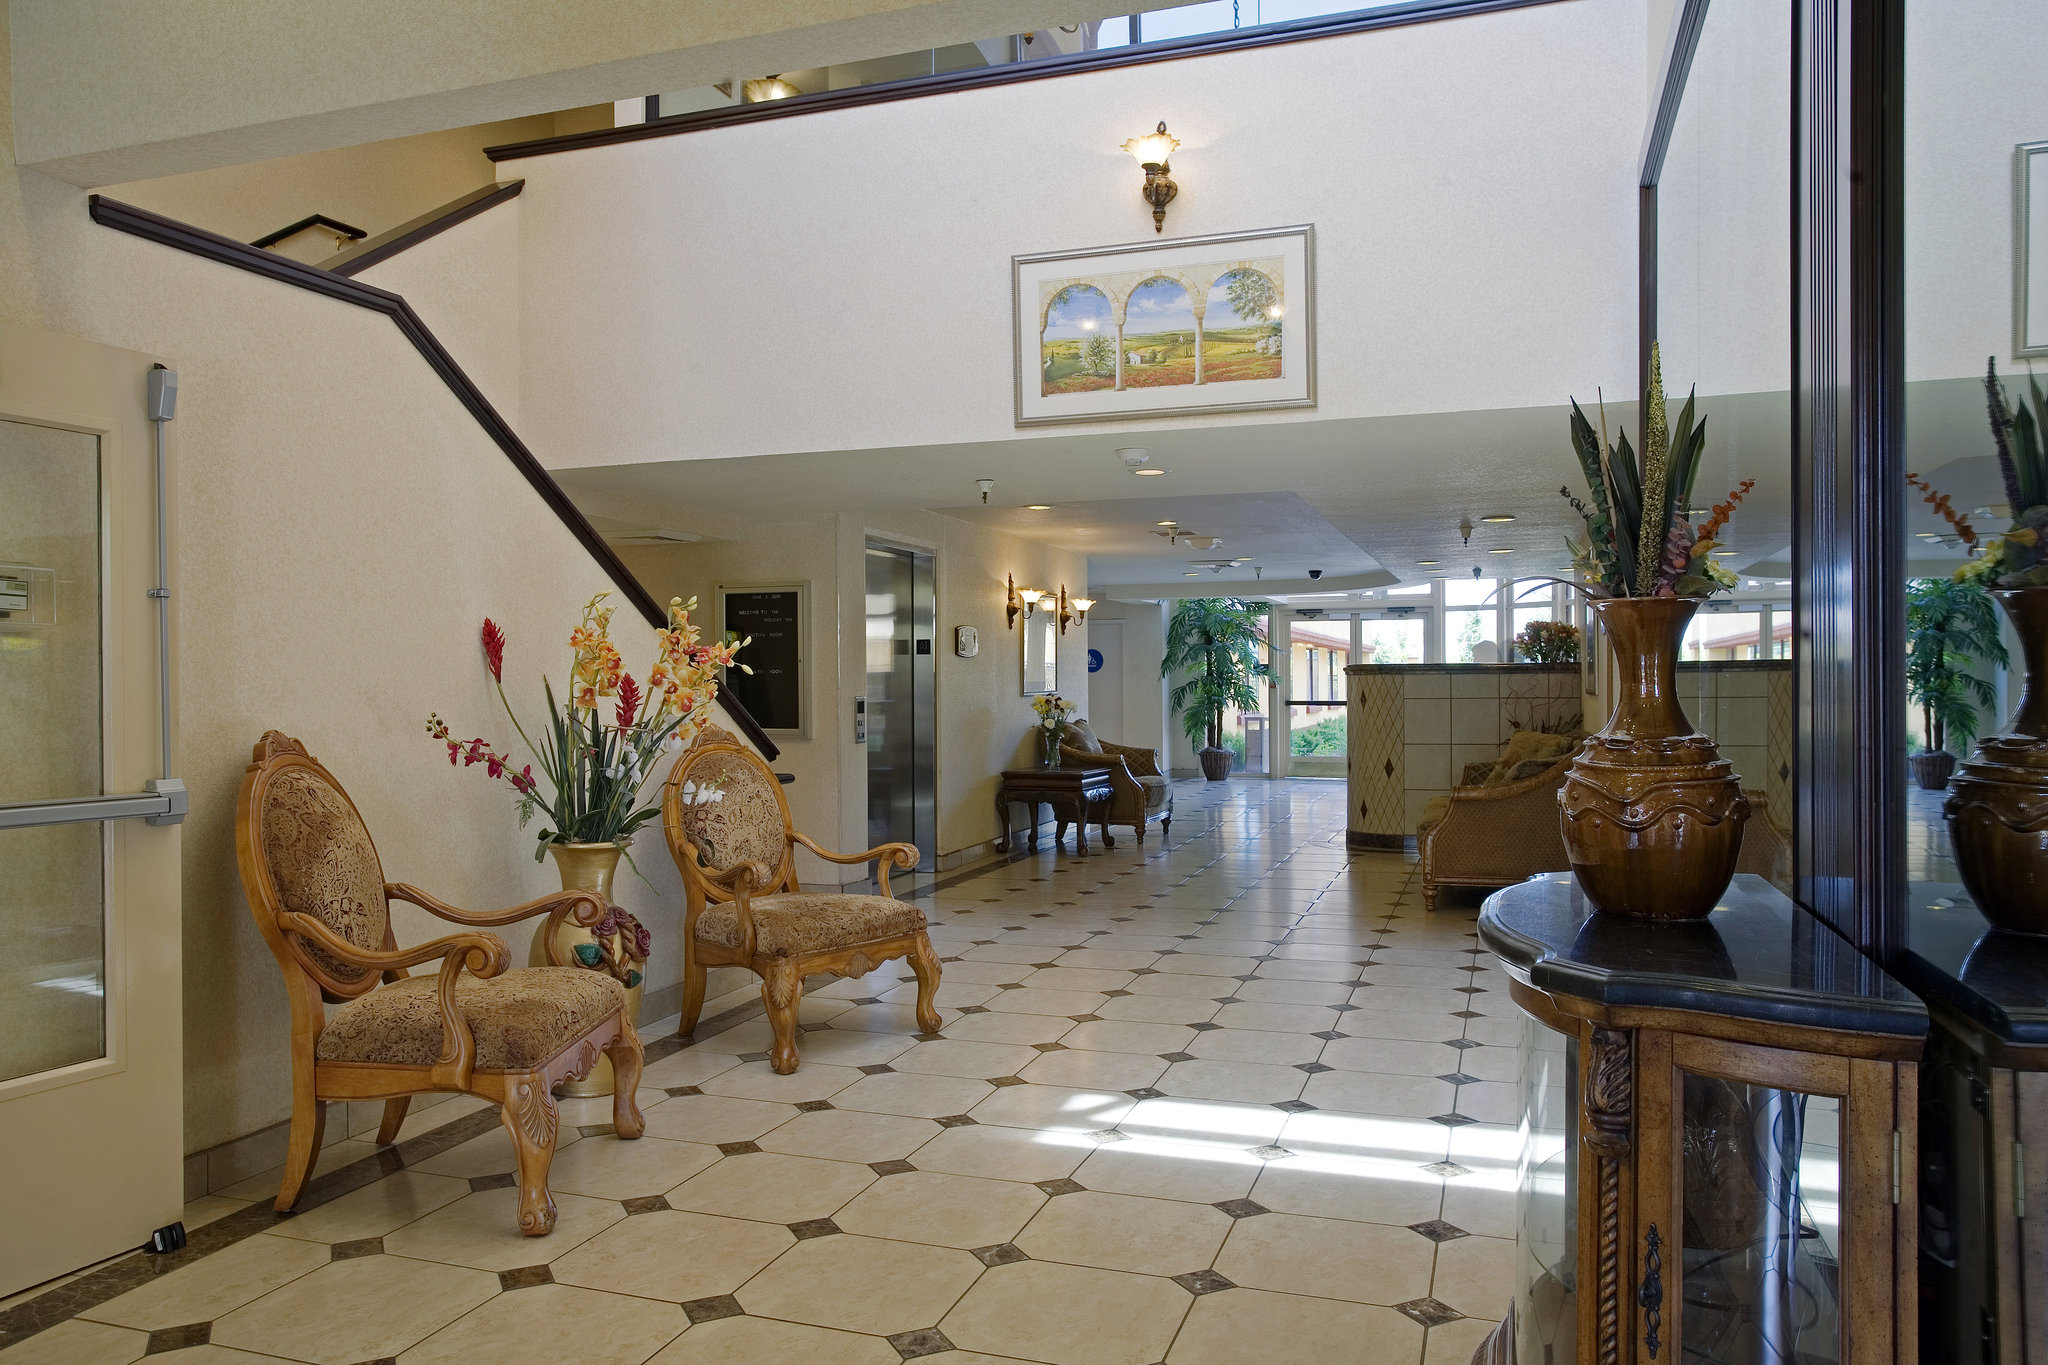 Holiday Inn Rancho Cordova